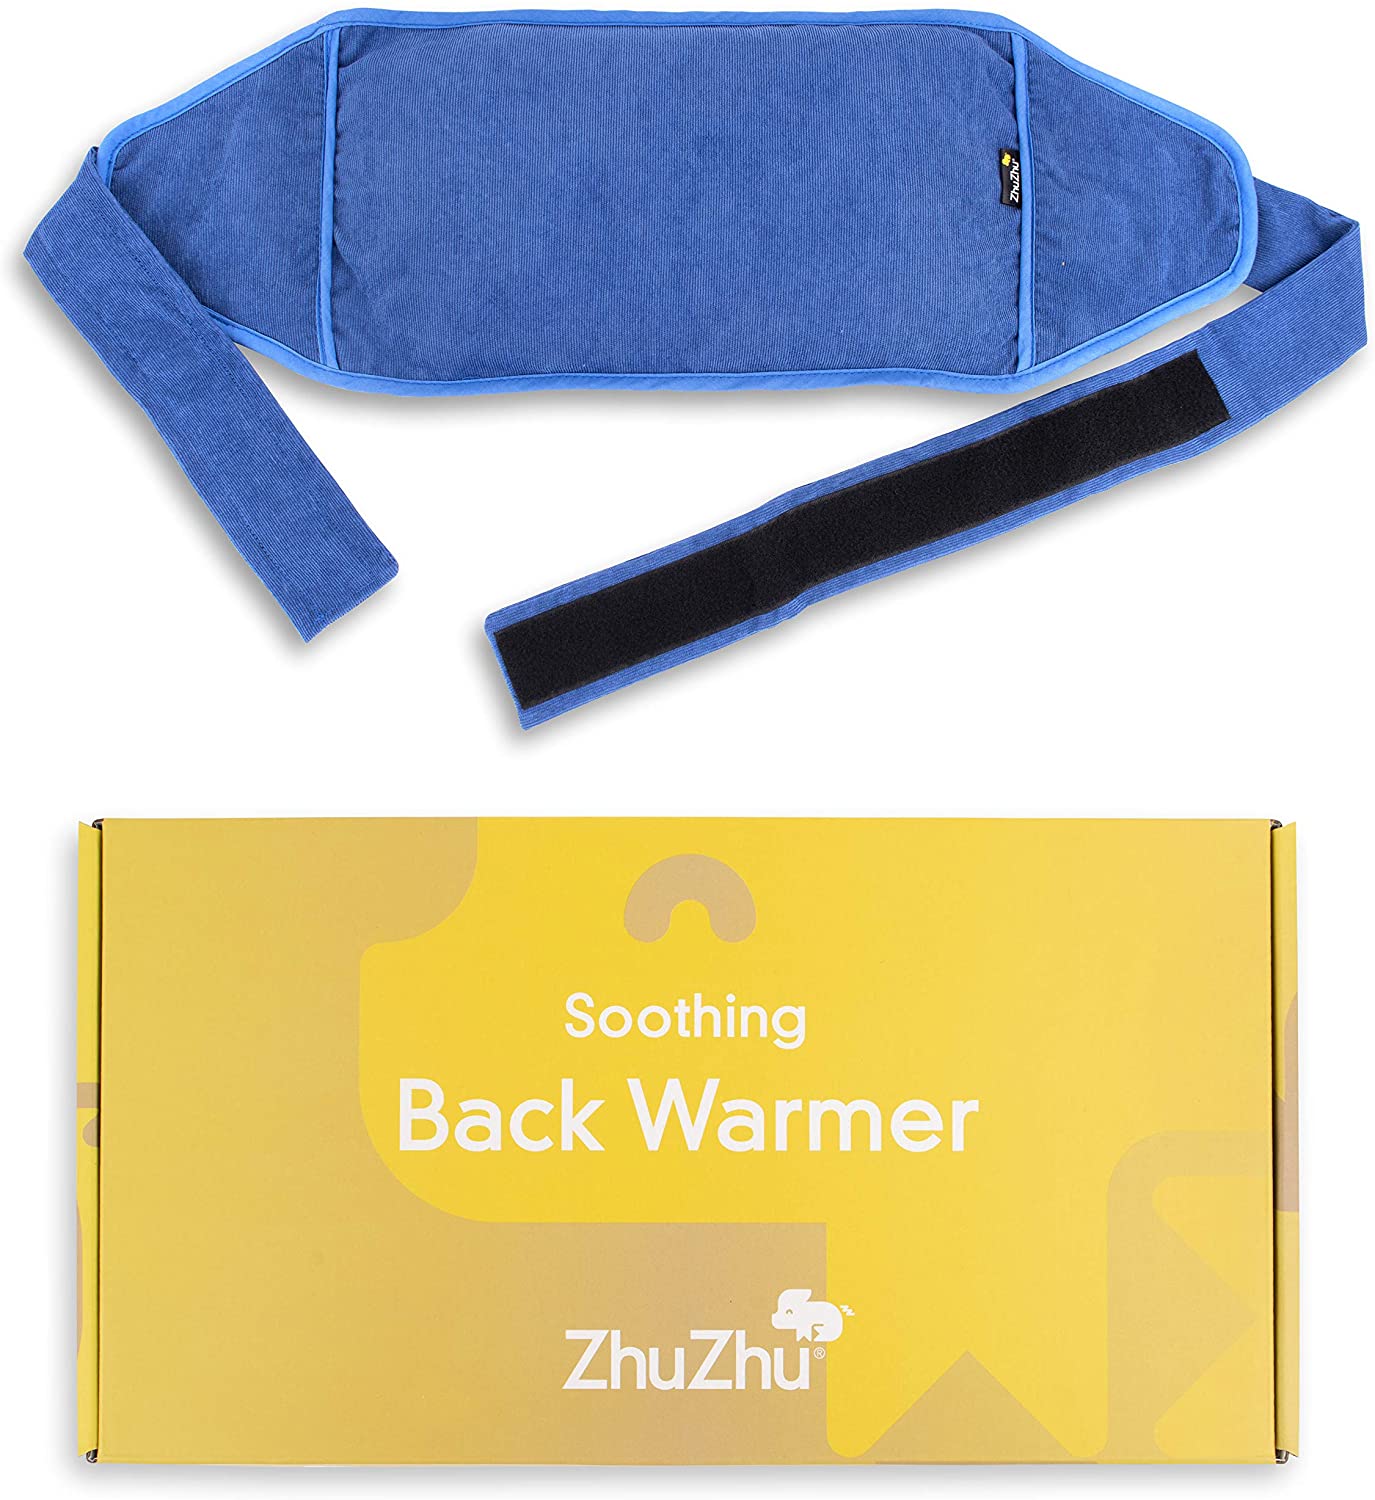 Zhu Zhu Soothing Back Warmer